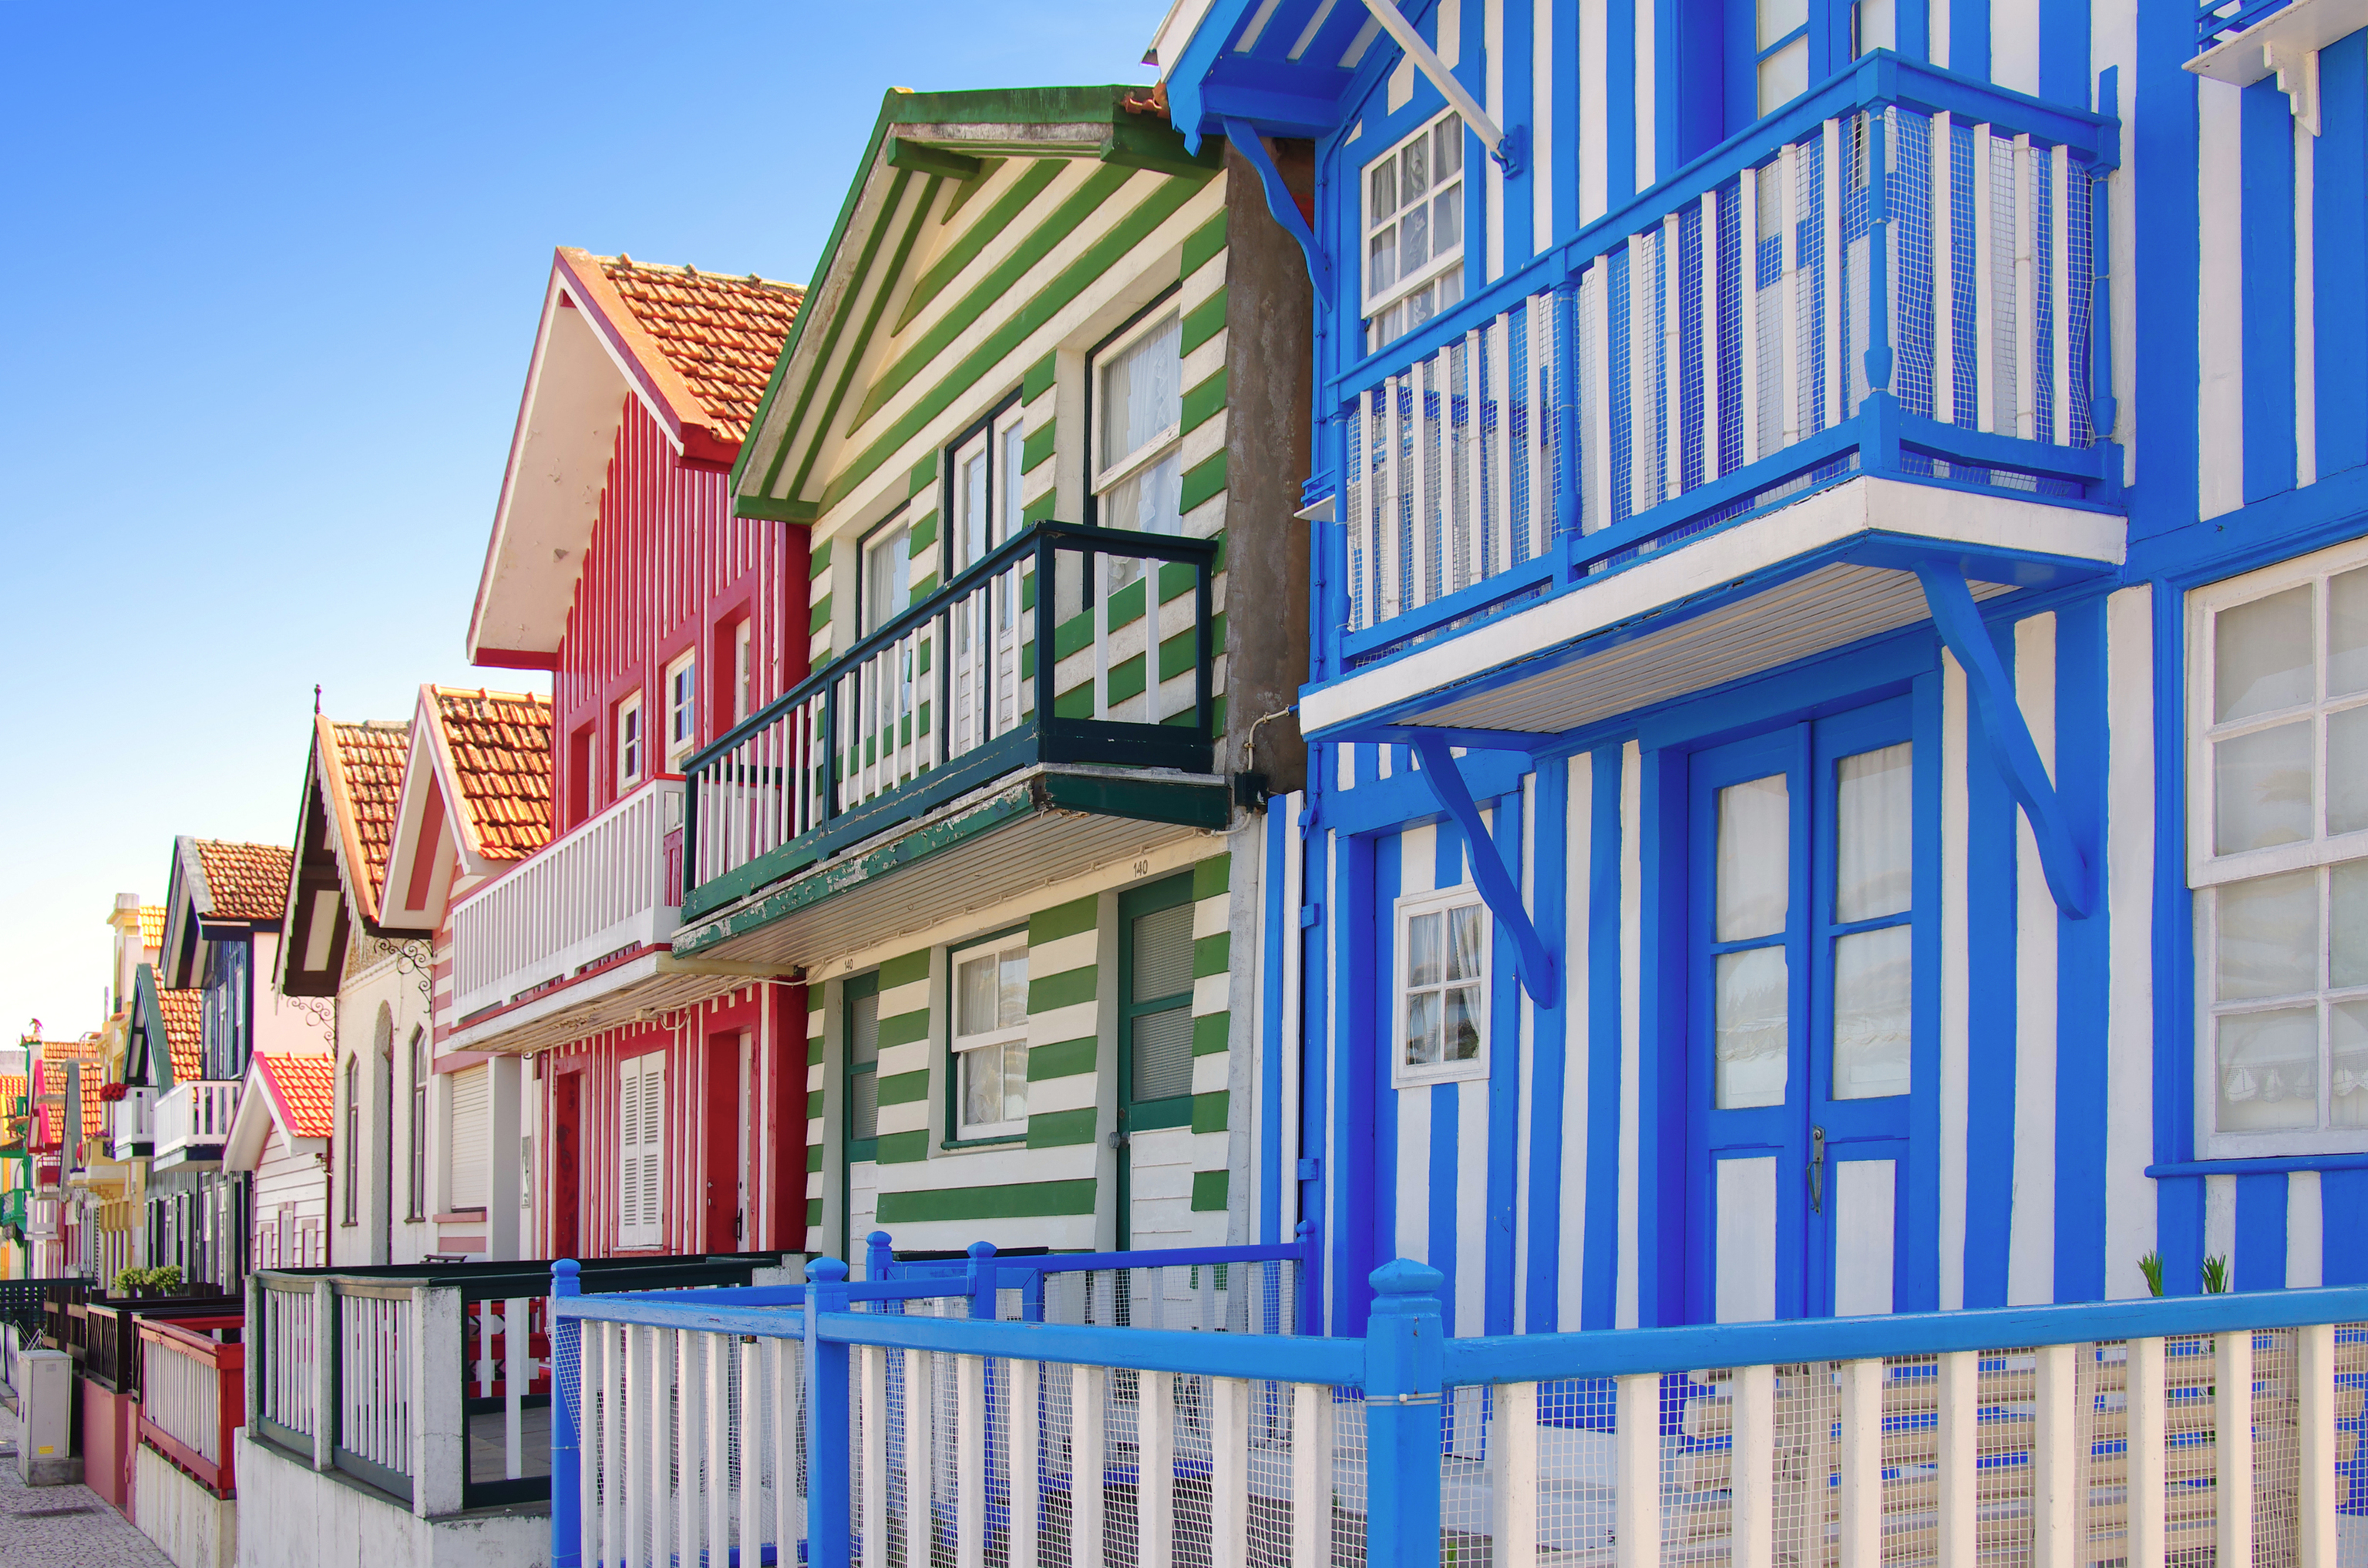 Las casas pintadas de Costa Nova, junto a Aveiro.